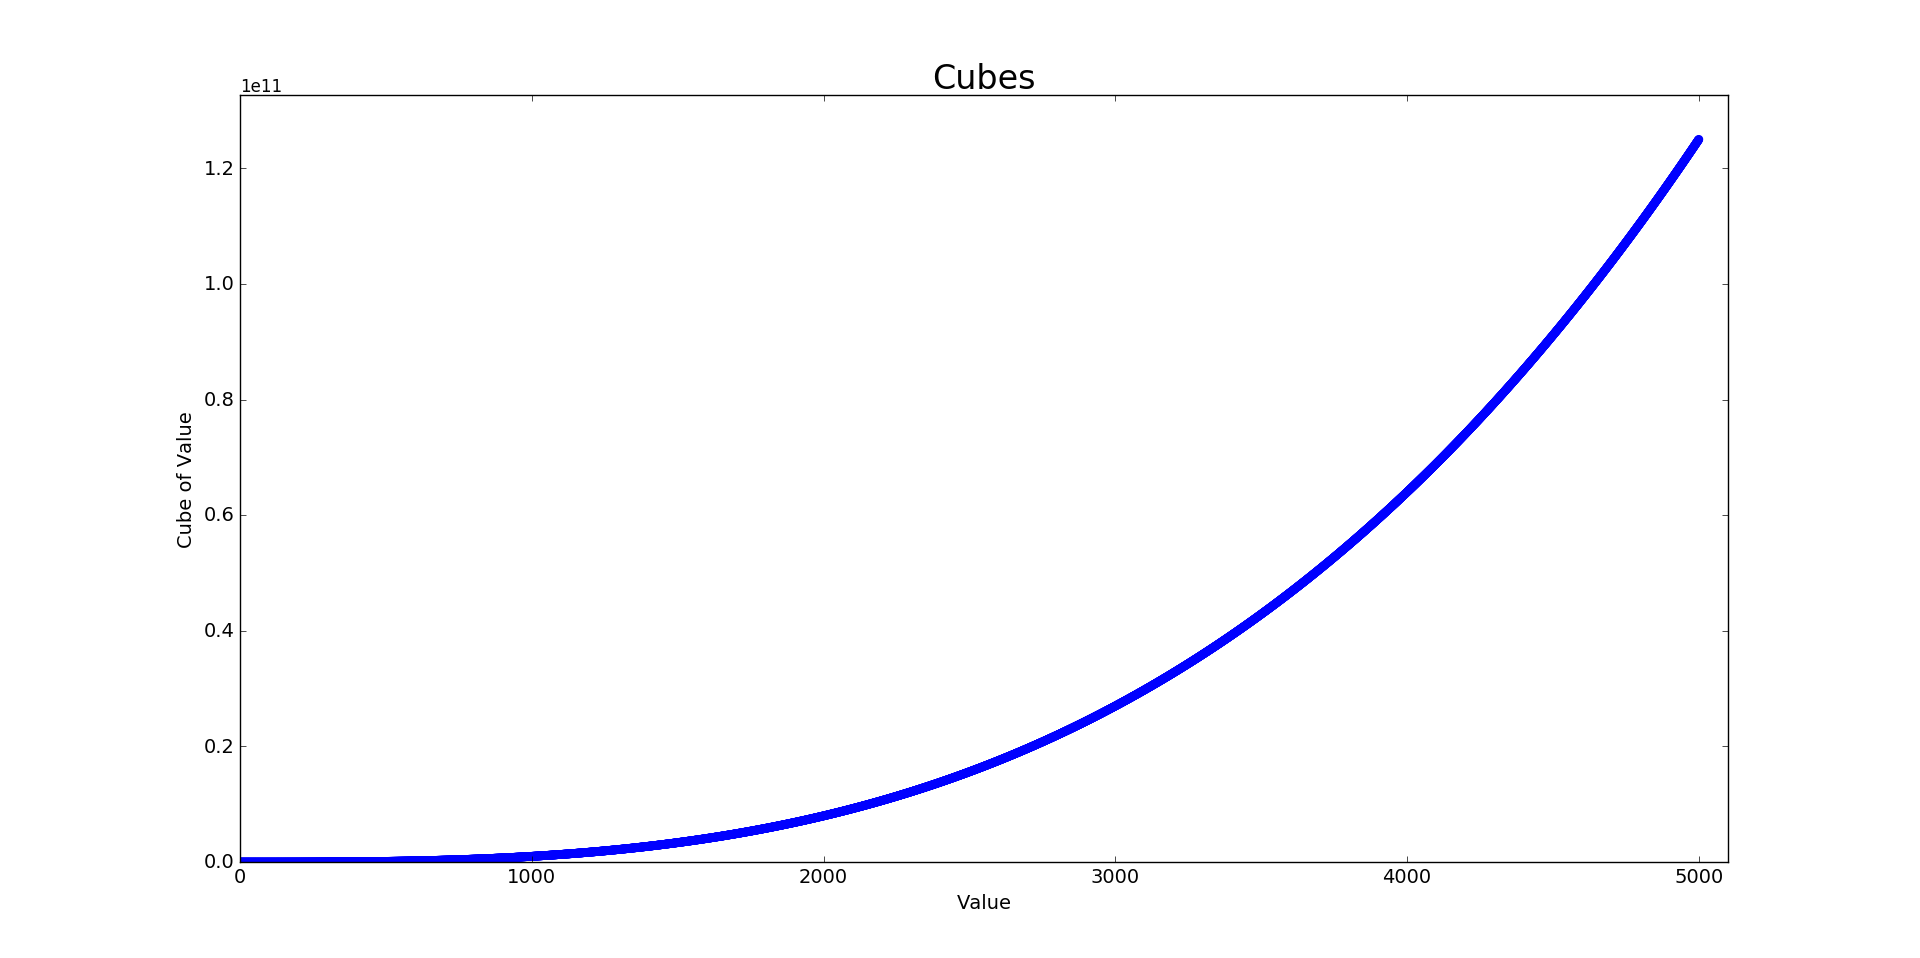 Plot showing 5000 cubes